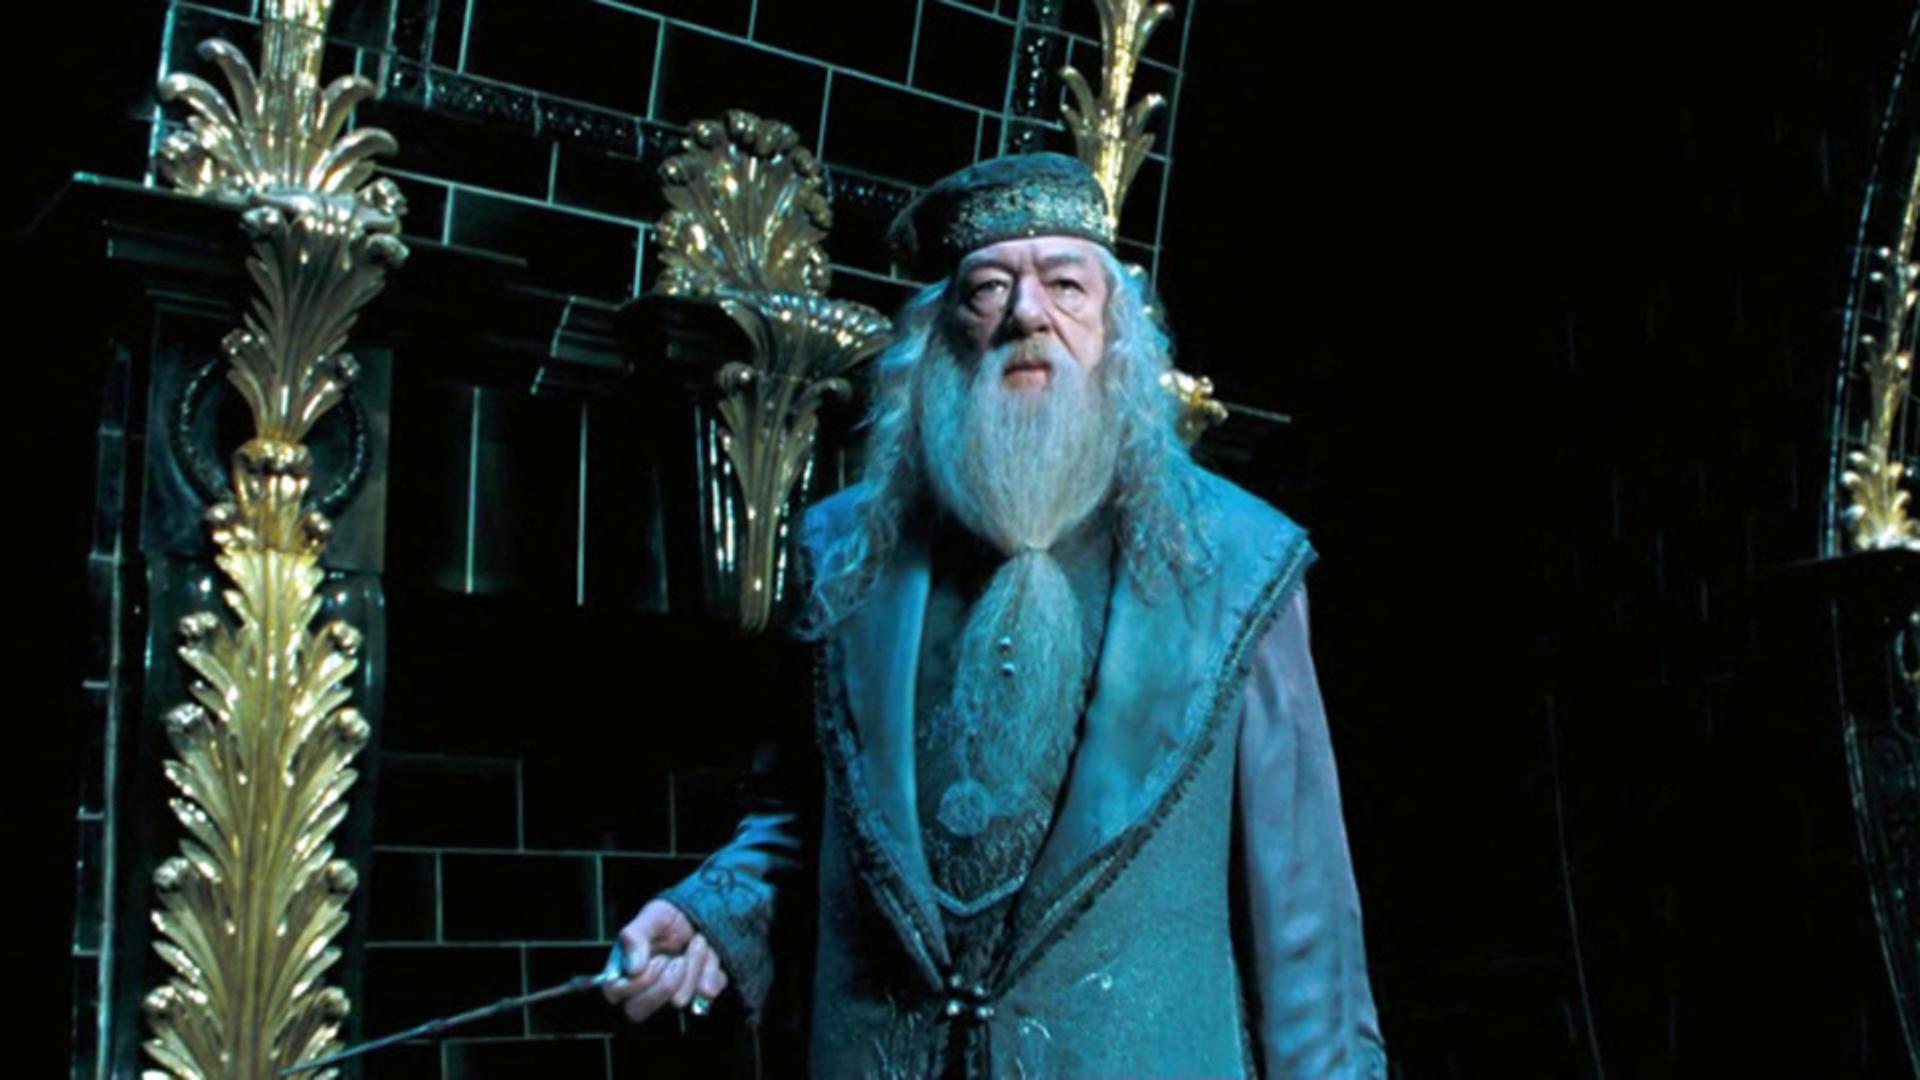 Doliu în lumea filmului. A murit Sir Michael Gambon, actorul care l-a jucat pe Albus Dumbledore, în seria ”Harry Potter”